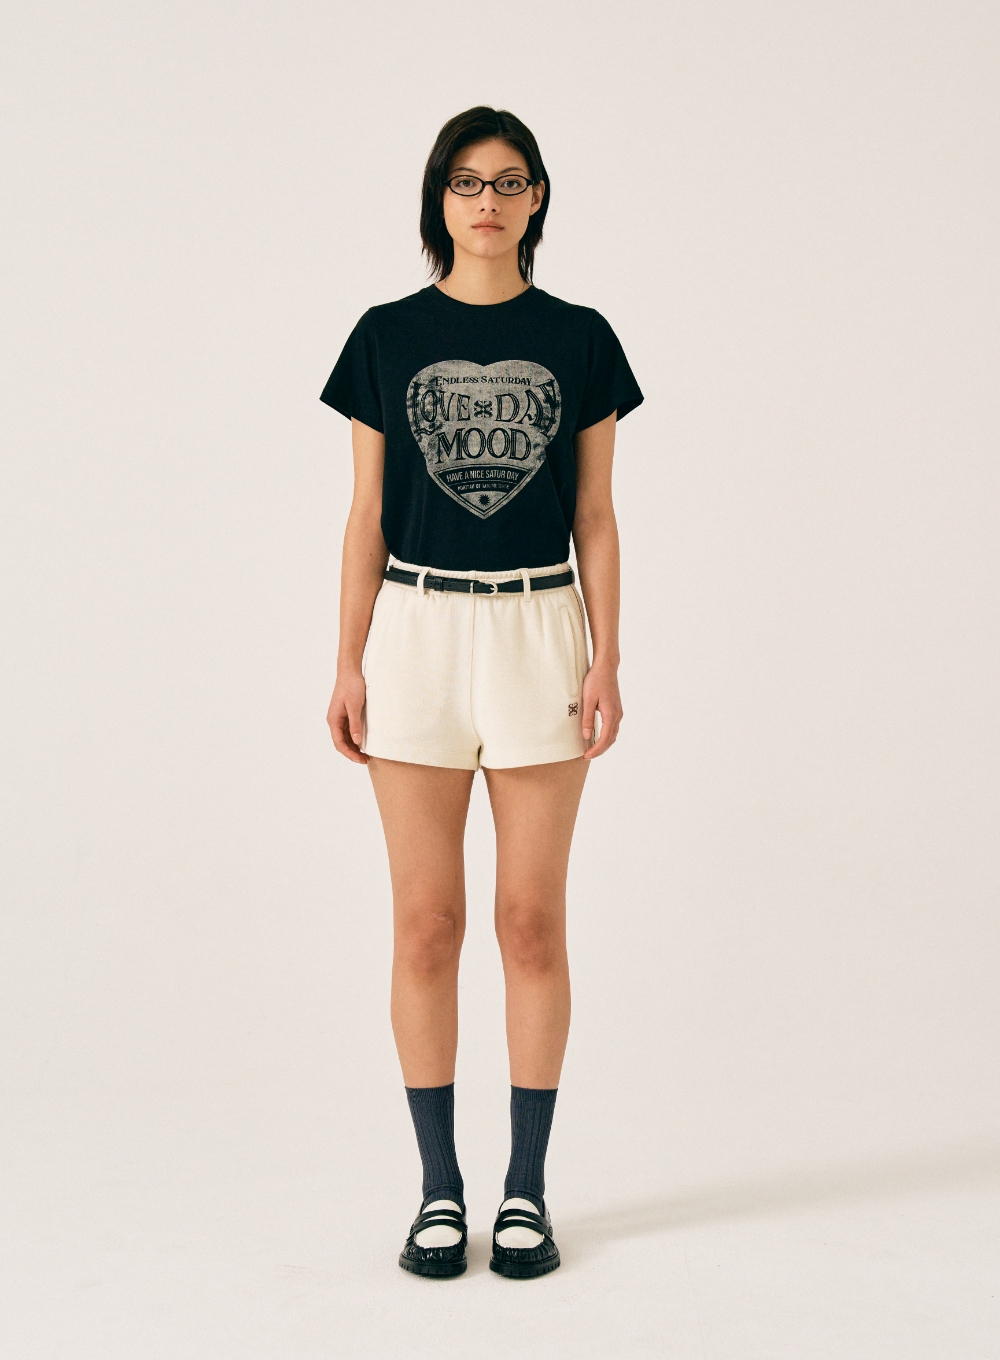 [5,000원 쿠폰] (W) Saturday Retro Mood Graphic T-Shirts - Vintage Black